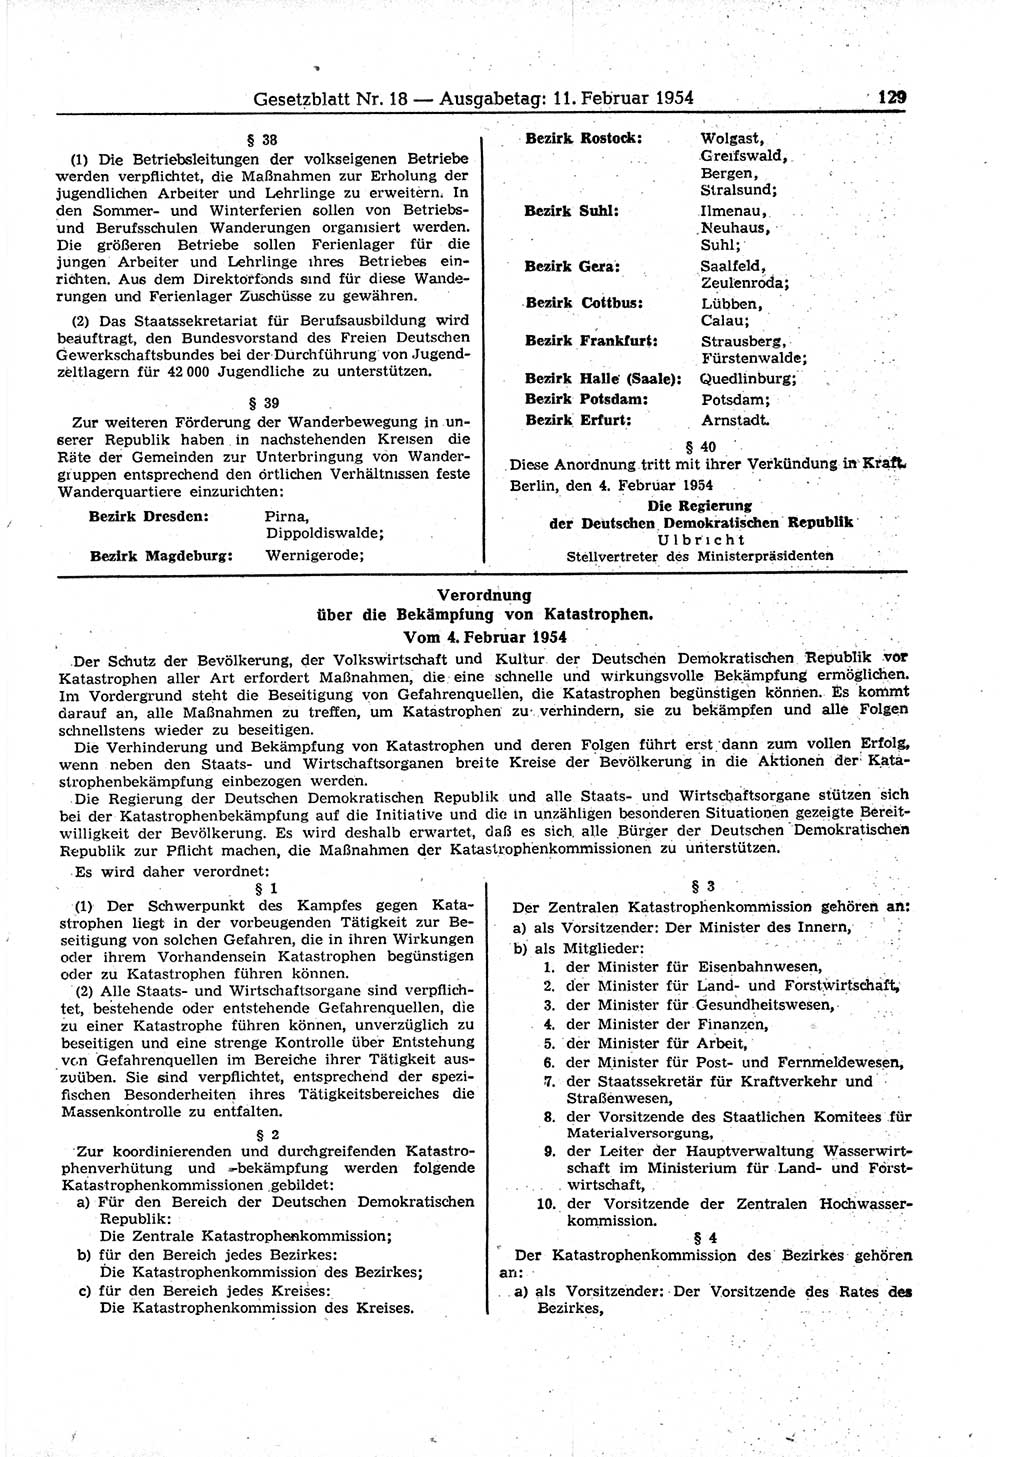 Gesetzblatt (GBl.) der Deutschen Demokratischen Republik (DDR) 1954, Seite 129 (GBl. DDR 1954, S. 129)